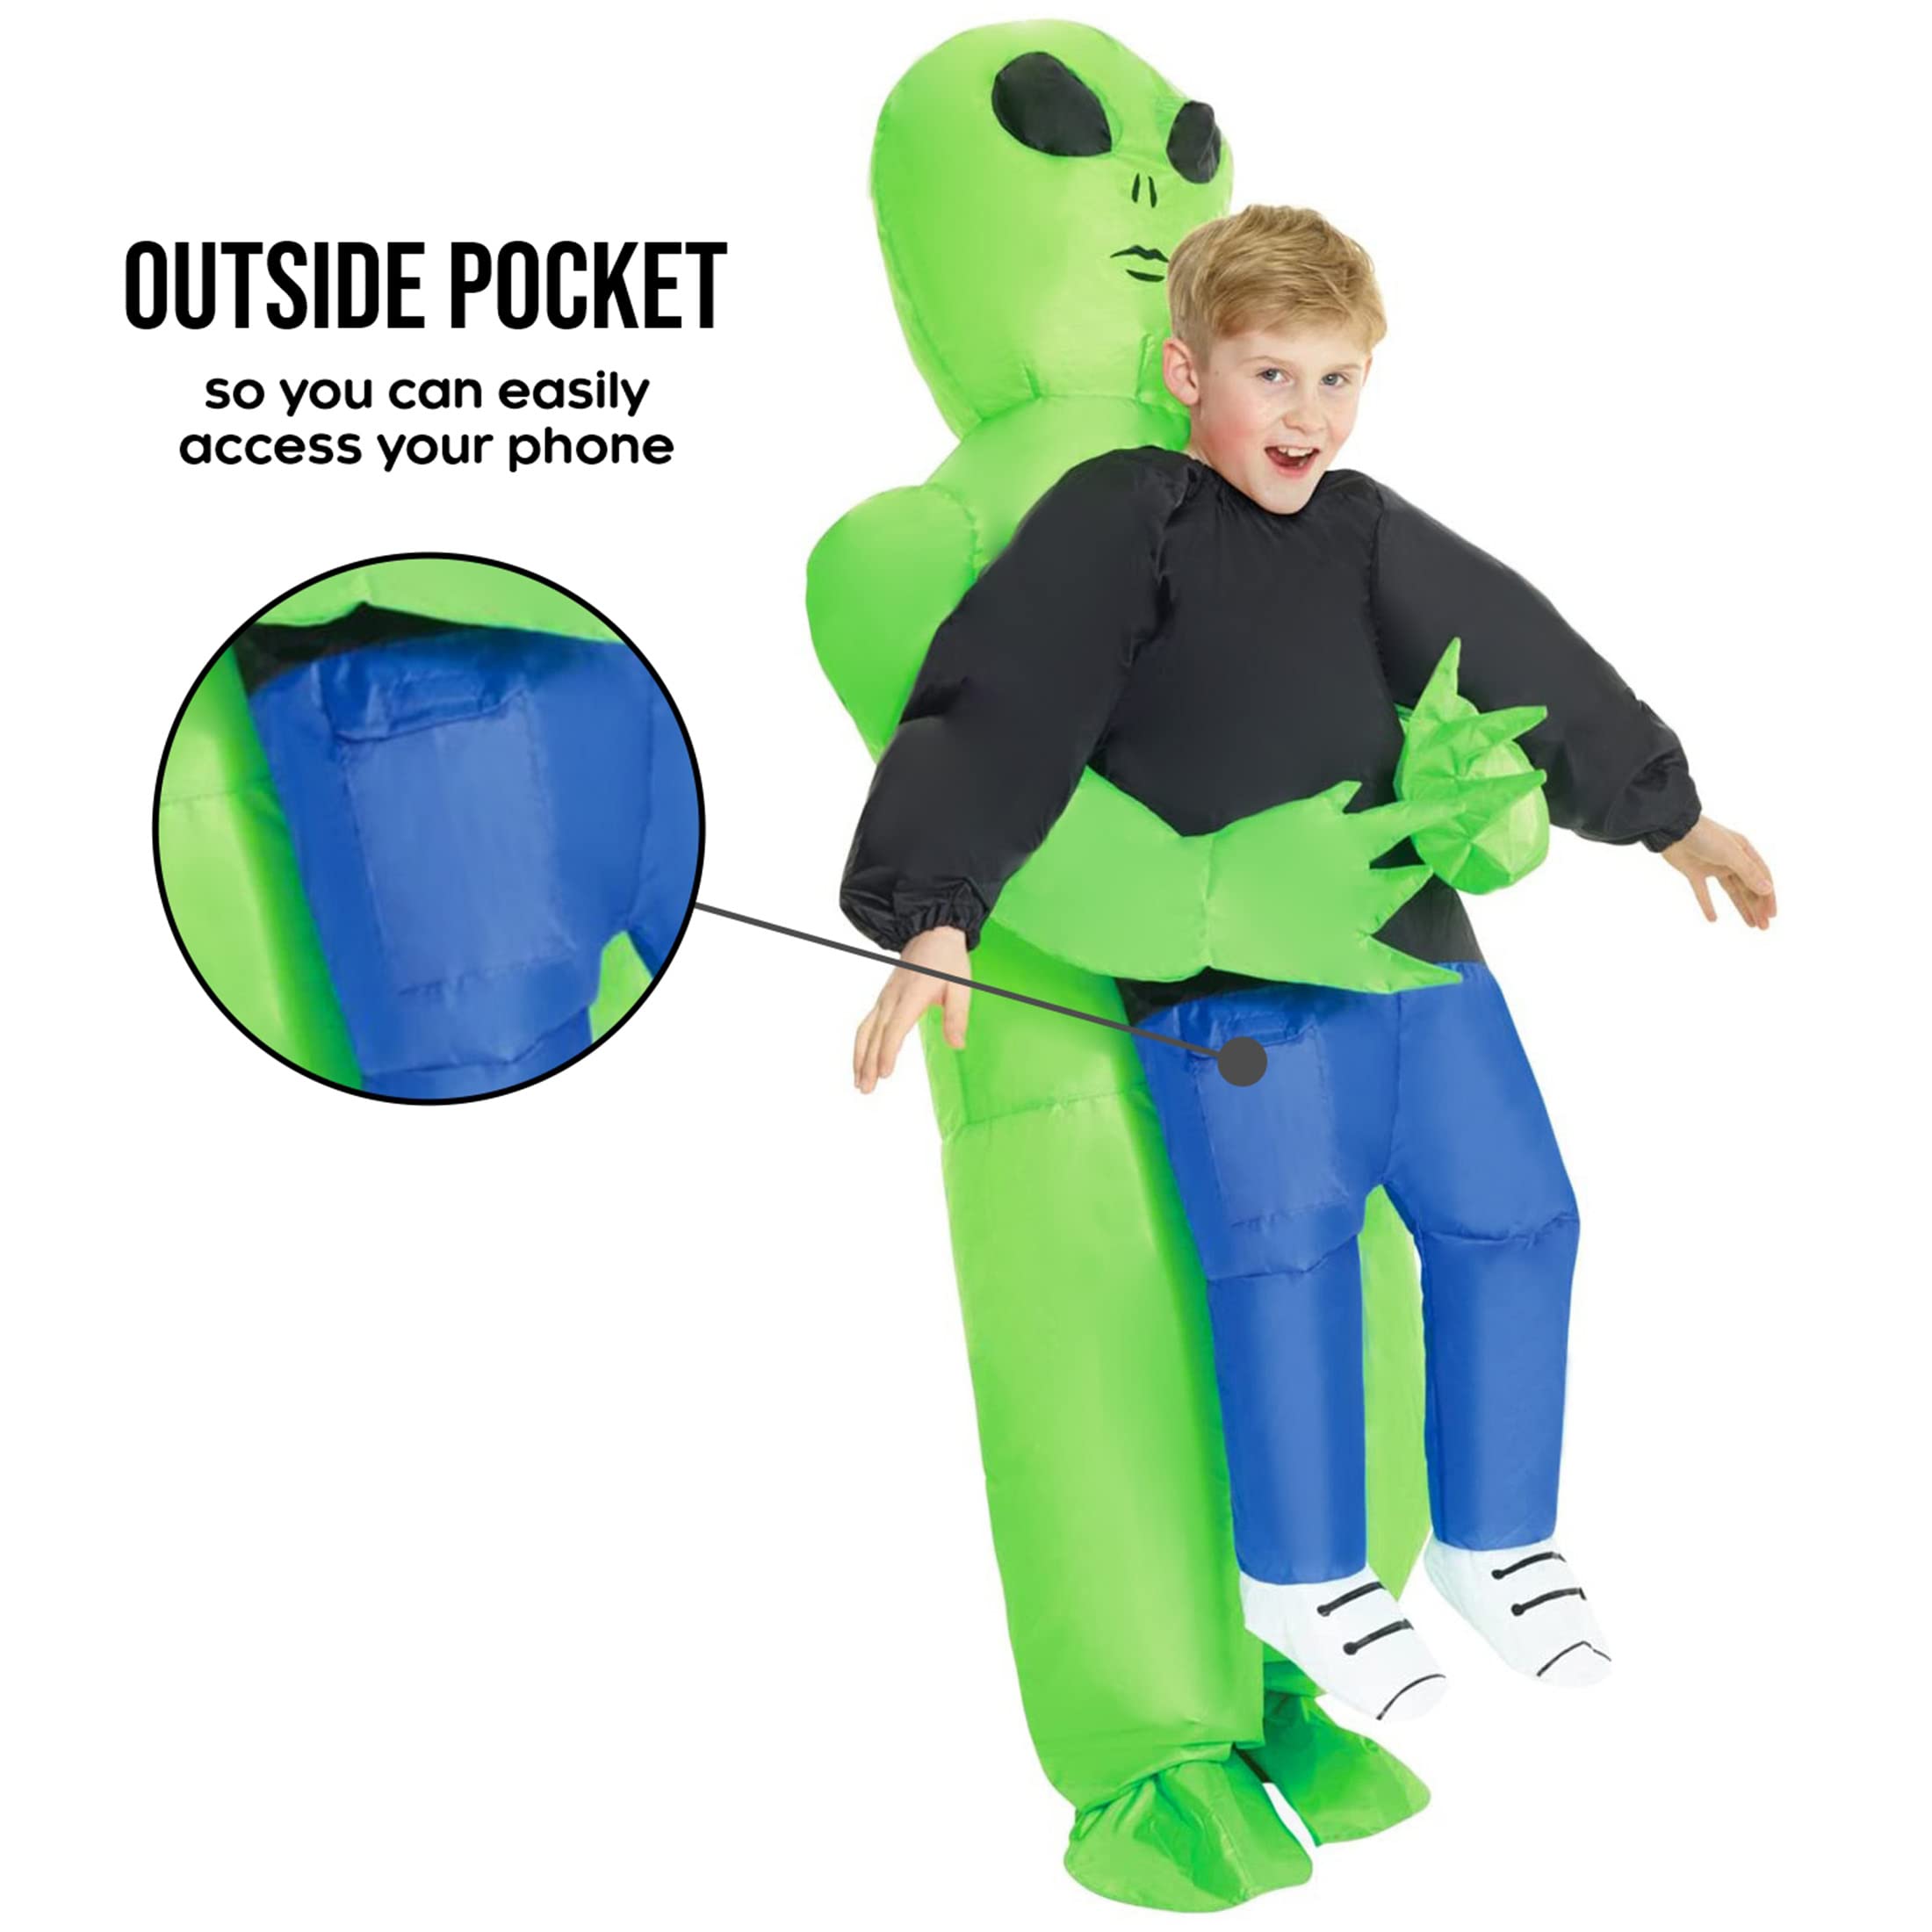 Morph Green Inflatable Alien Costume Kids Inflatable Costumes For Kids Blow Up Halloween Costumes For Kids Boys Girls